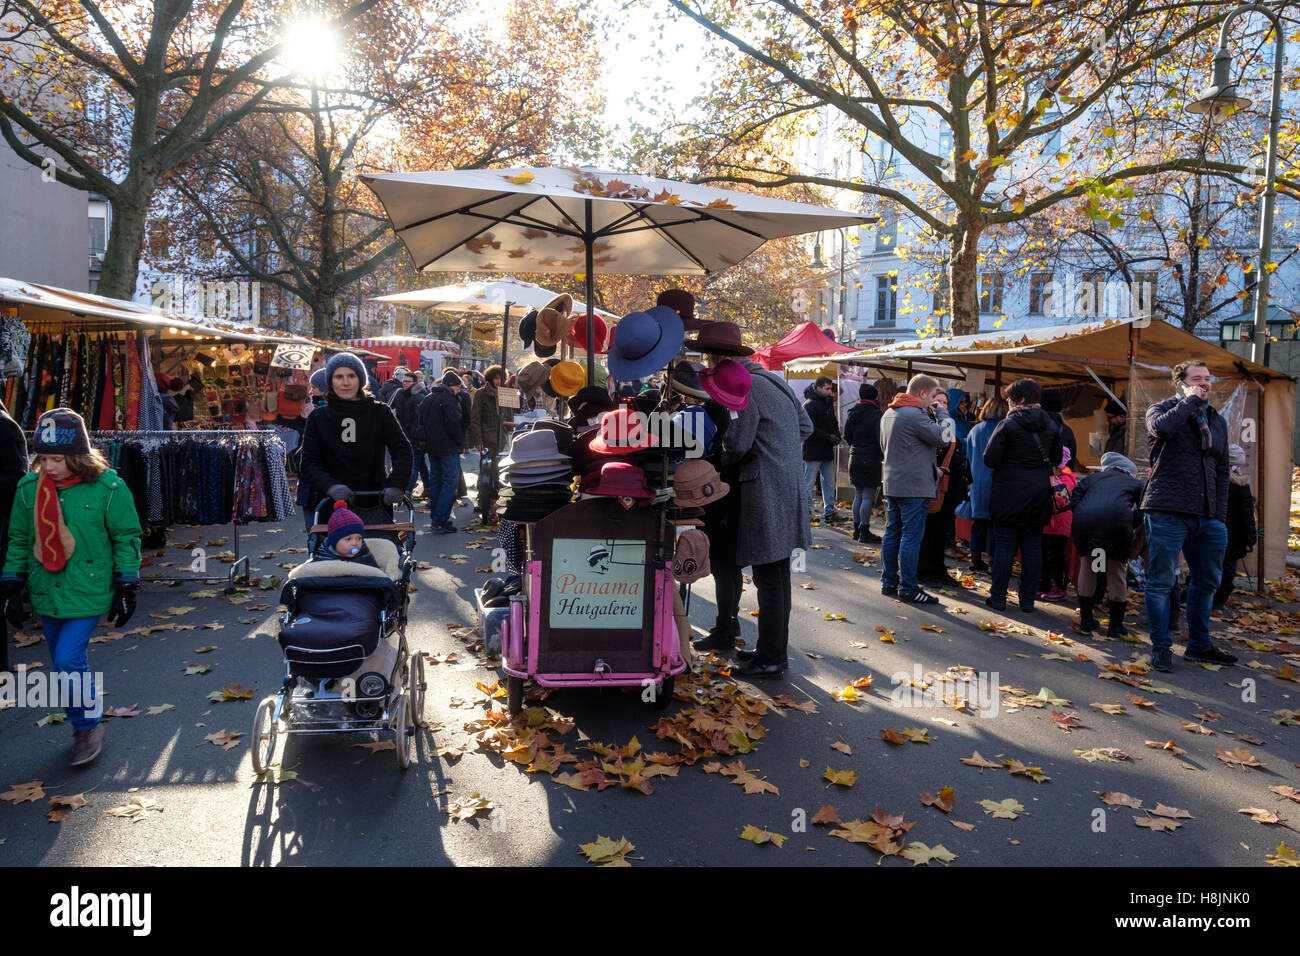 Week-end marché plein air à Kollwitzplatz en automne à Prenzlauer Berg , Berlin, Allemagne Banque D'Images